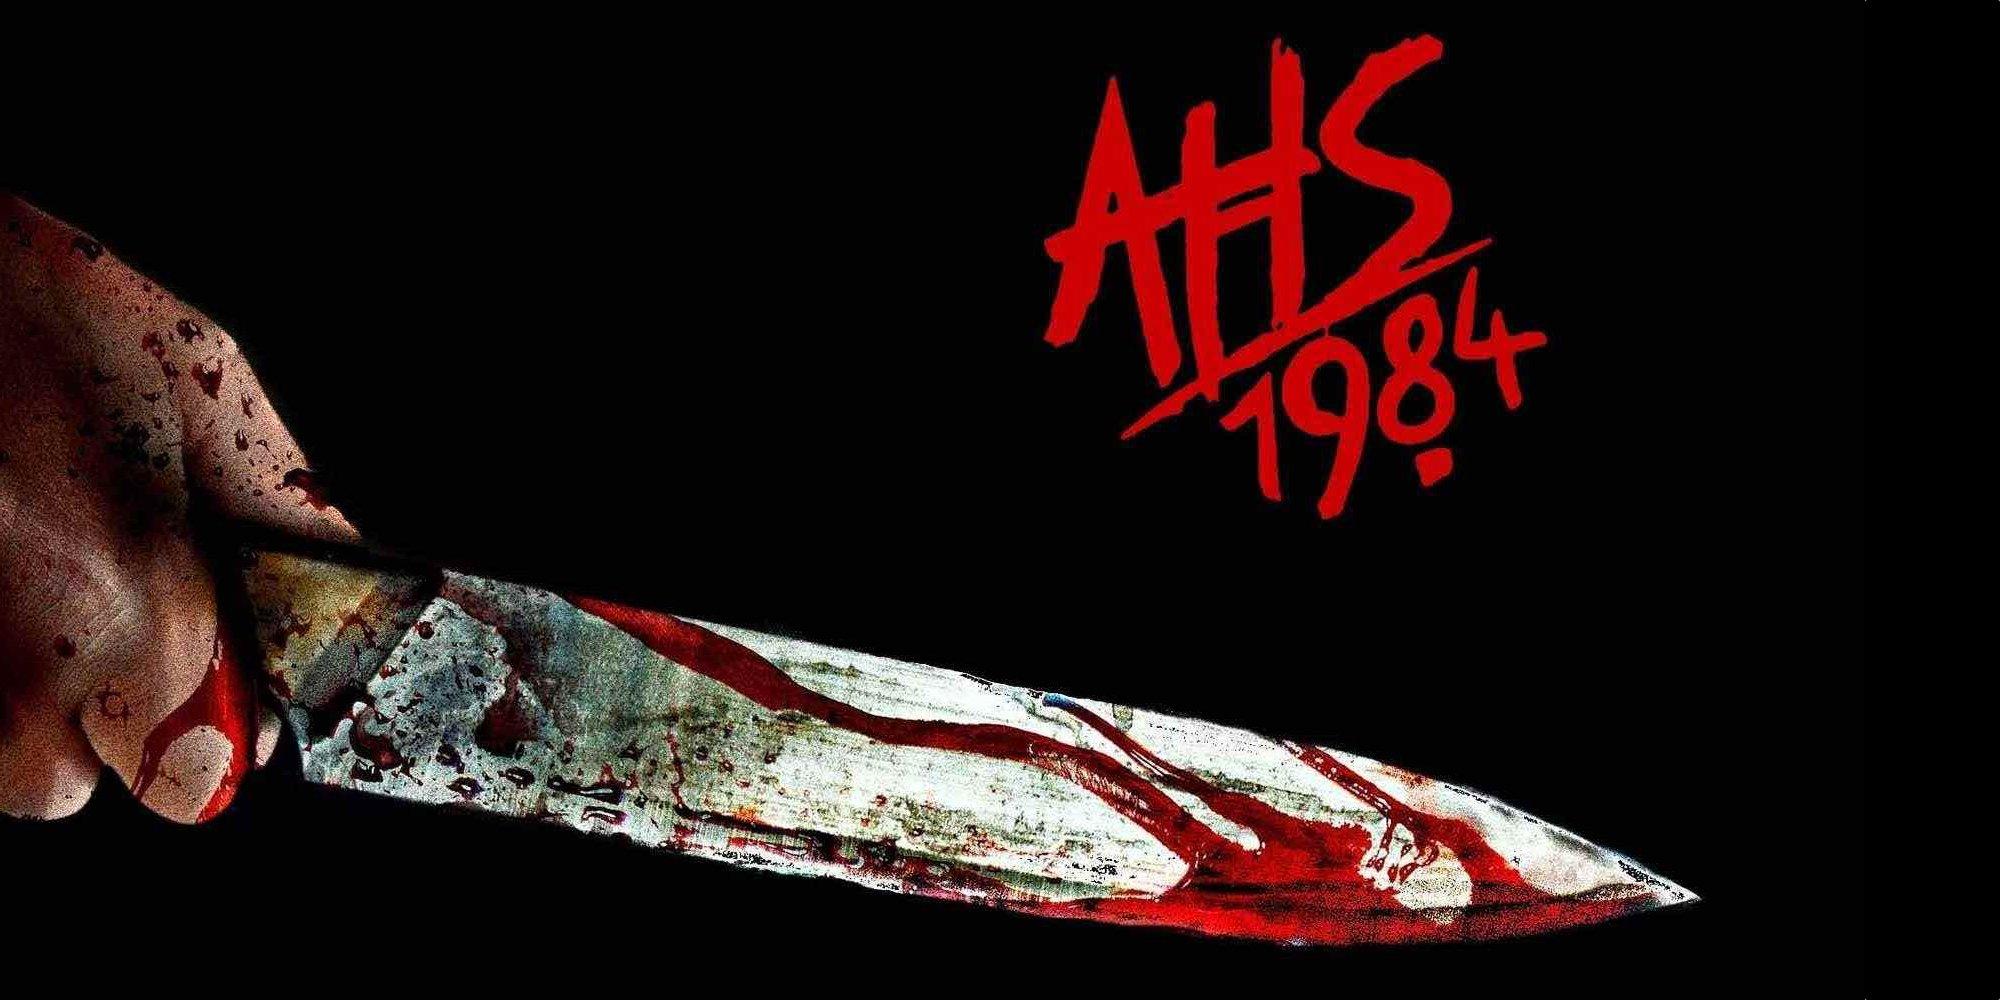 AHS: 1984 officially the most acclaimed AHS season & TV